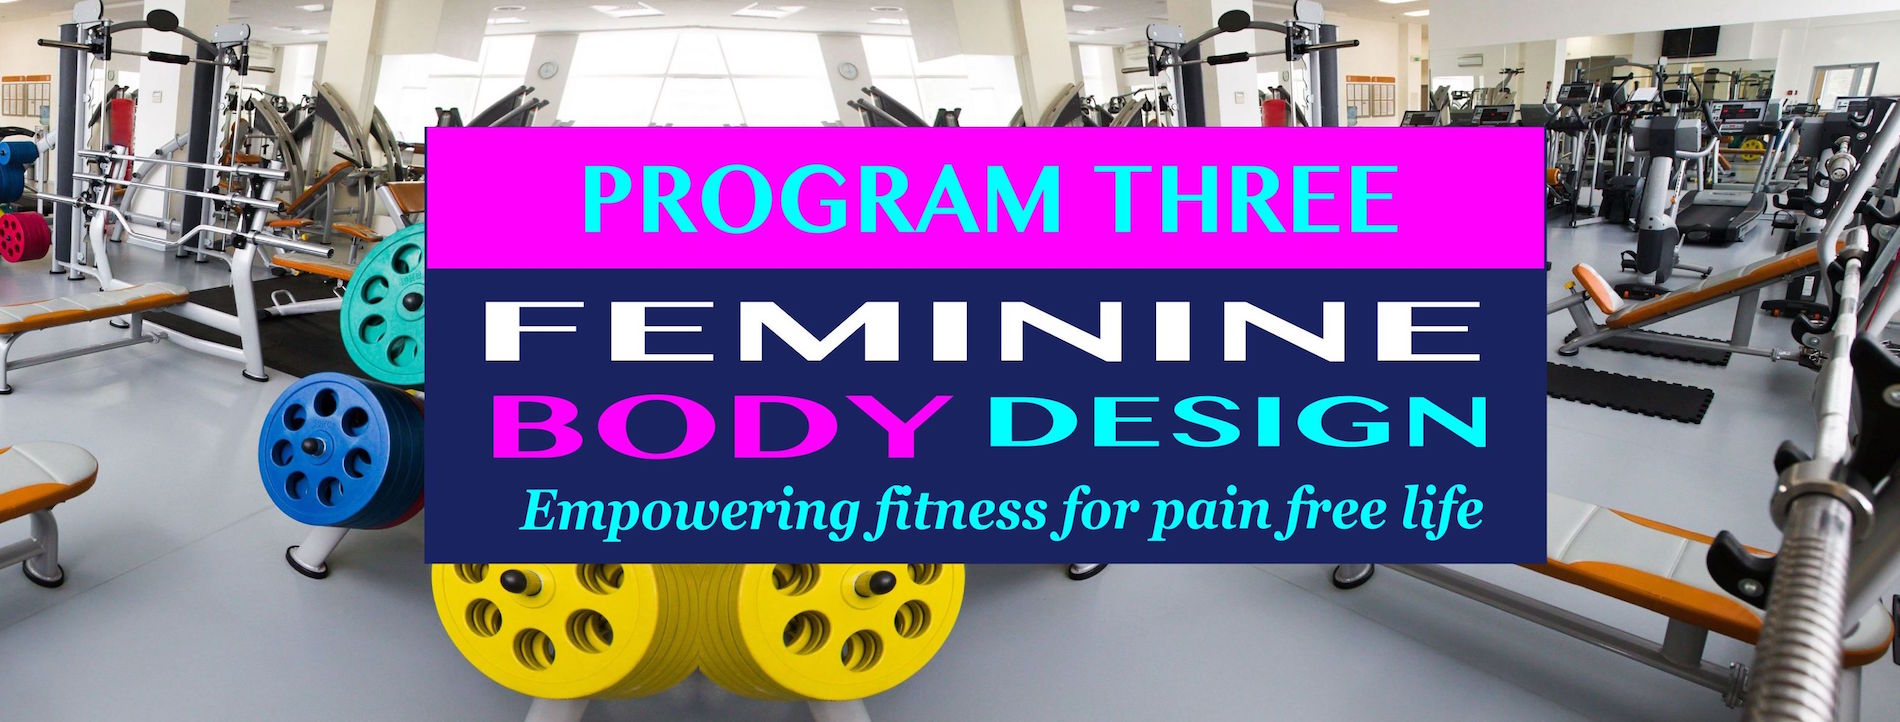 Feminine Body Design Program 3